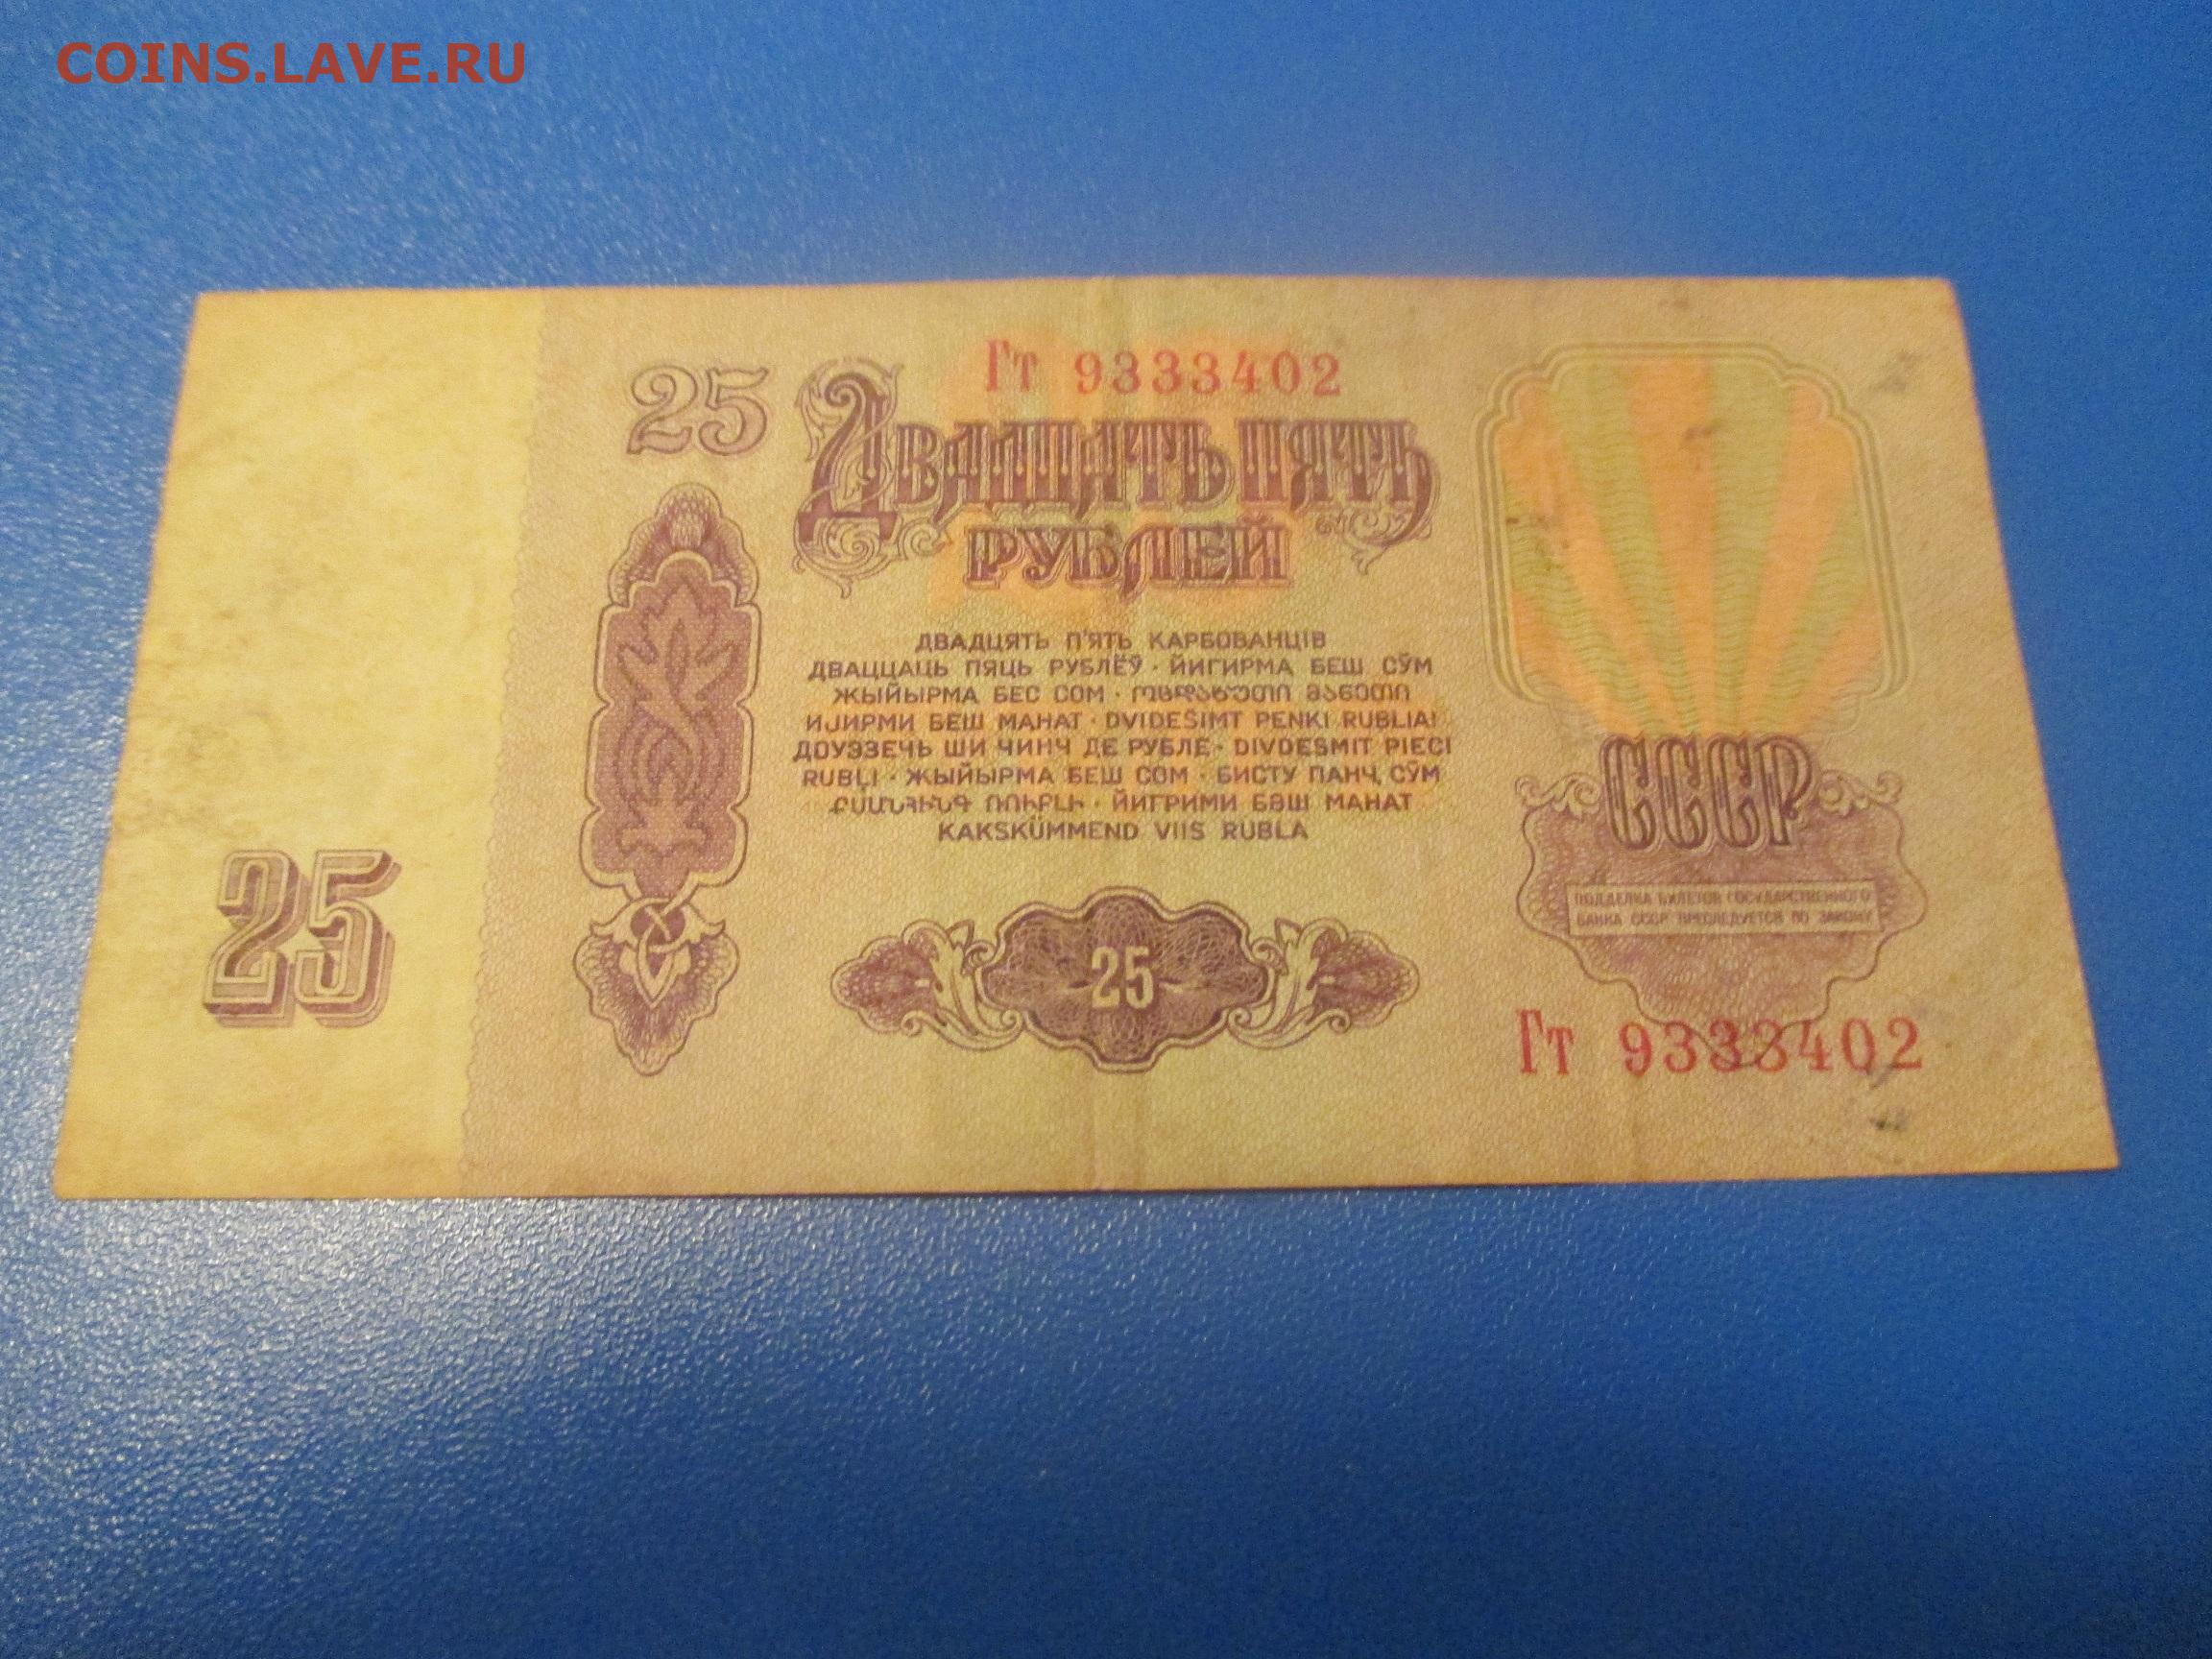 20 рублей 1961. 25 Рублей 1961 года. Рубль 1961 года. Двадцать пять рублей 1961. Купюра 25 рублей СССР 1961.